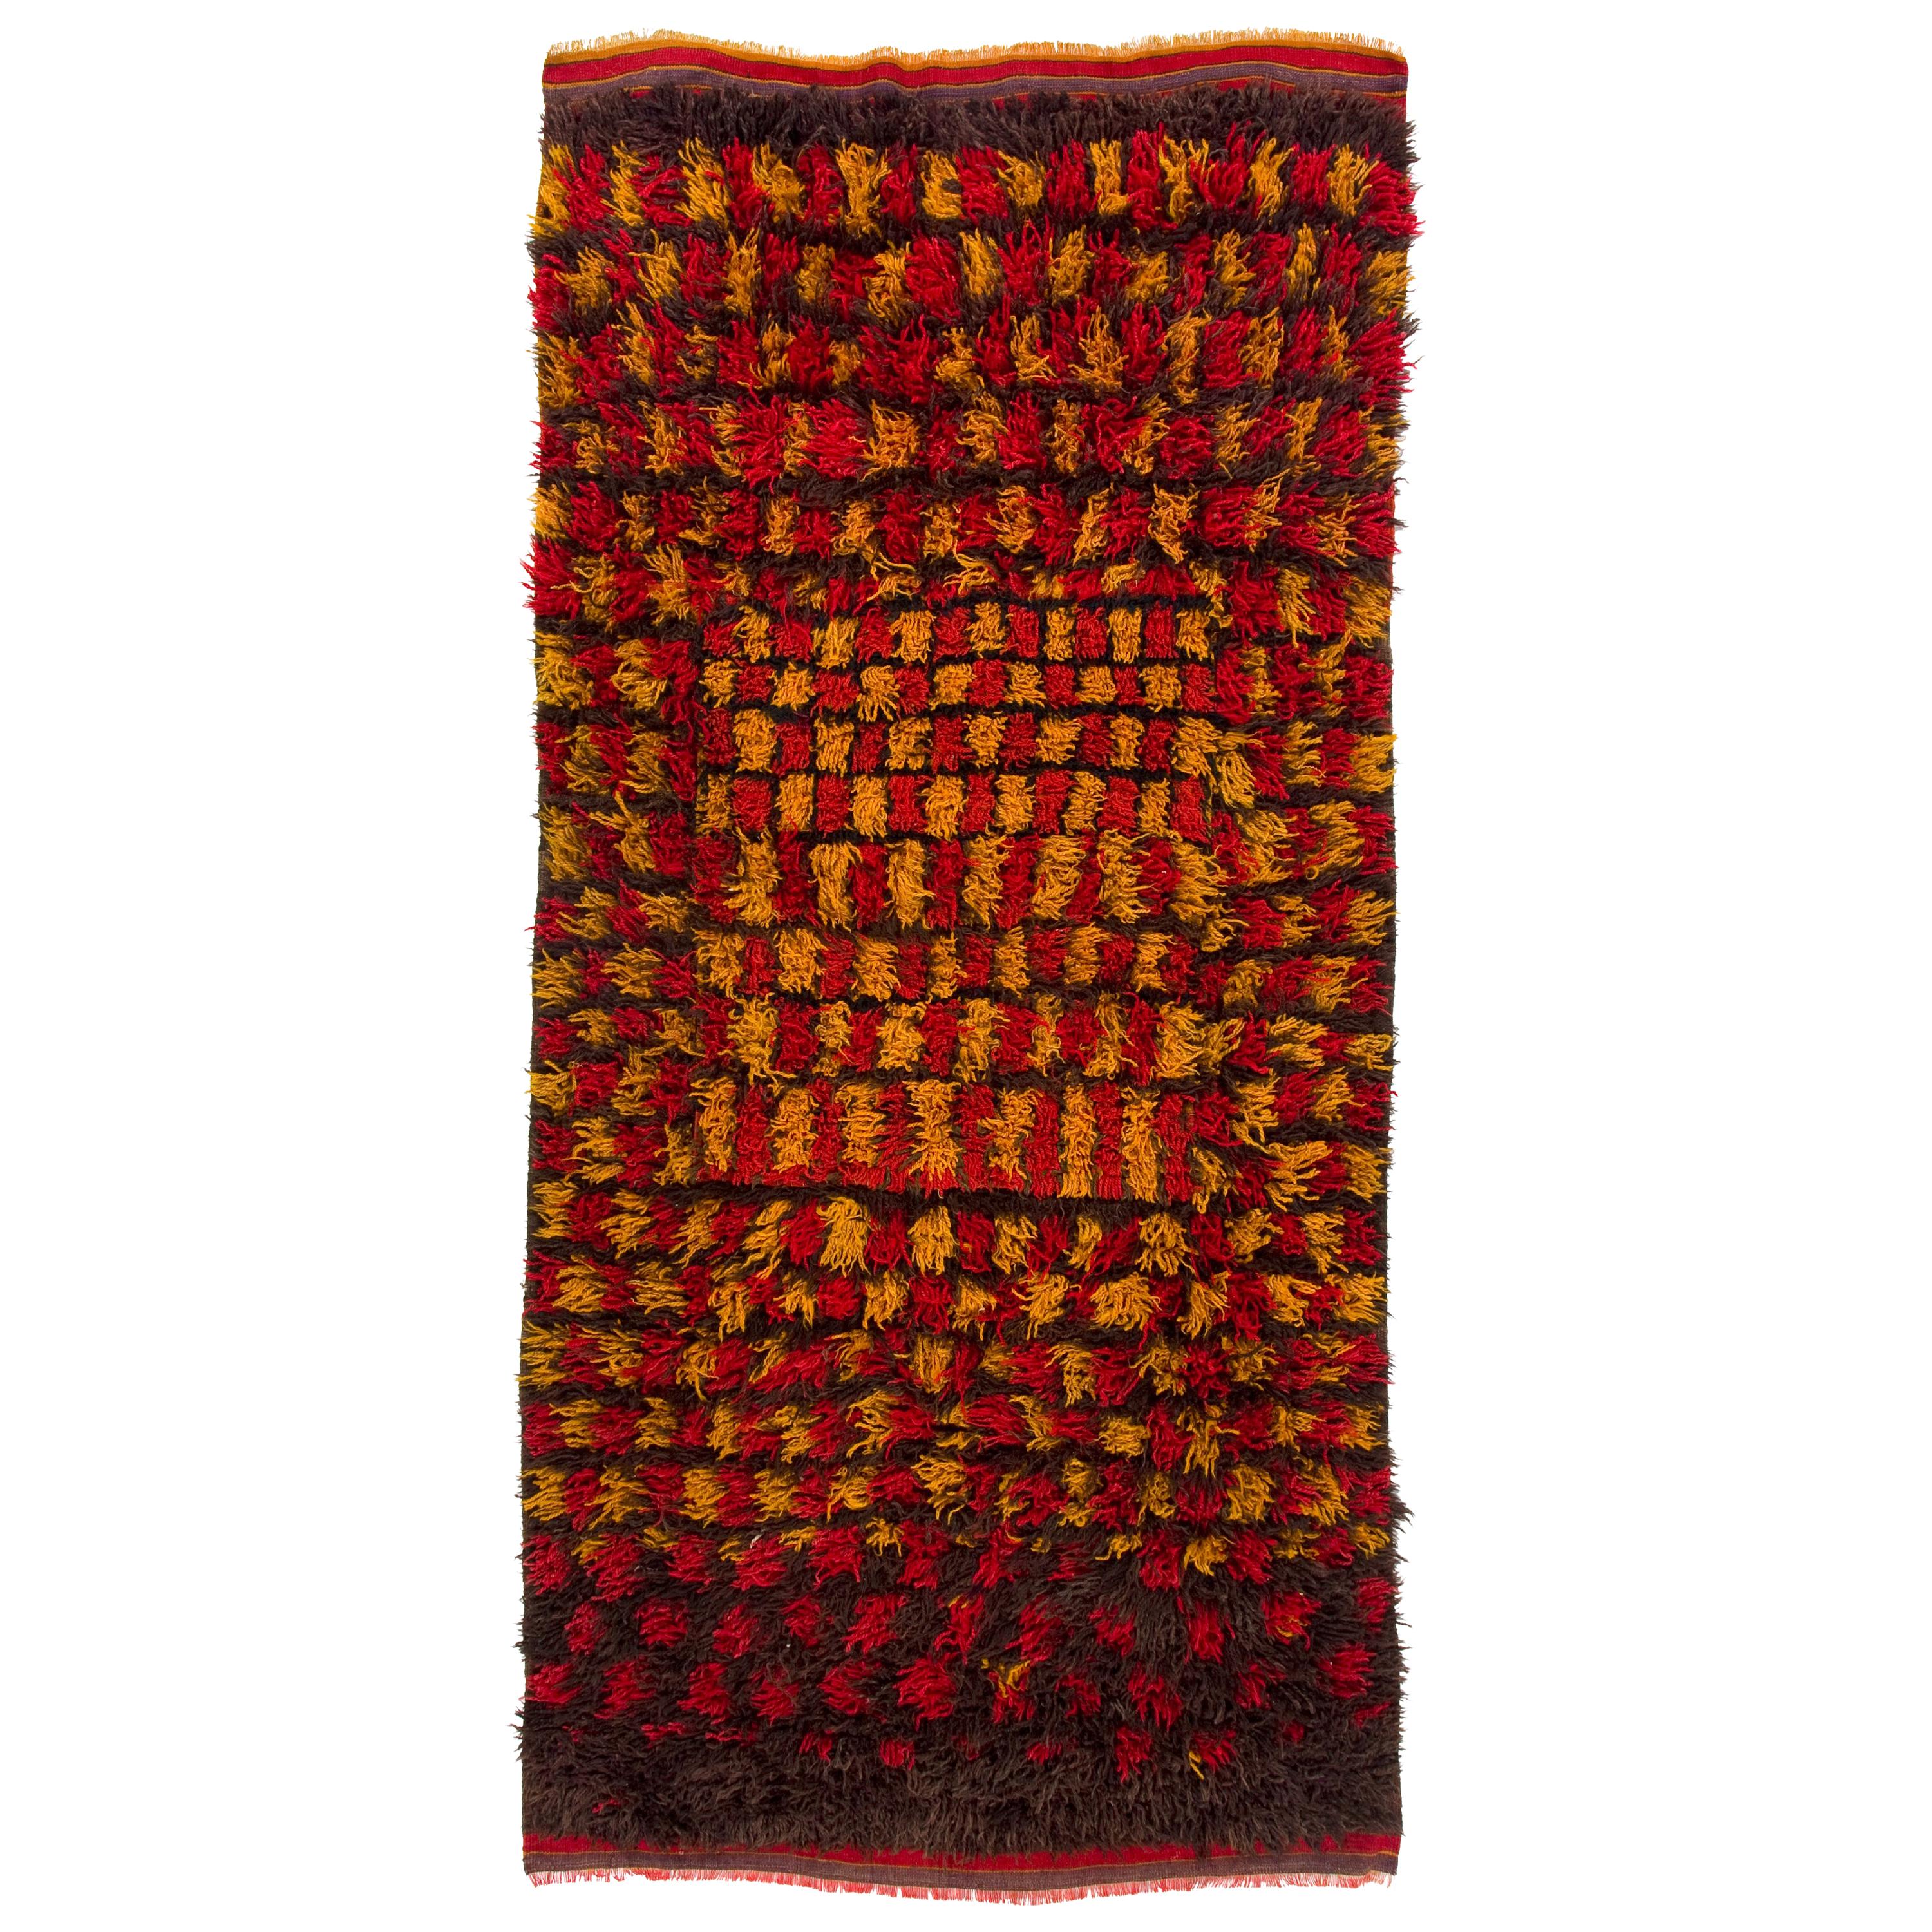 4.8x9.8 Ft Tapis "Tulu" fait main avec de longs poils de laine dans les couleurs rouge, jaune et Brown